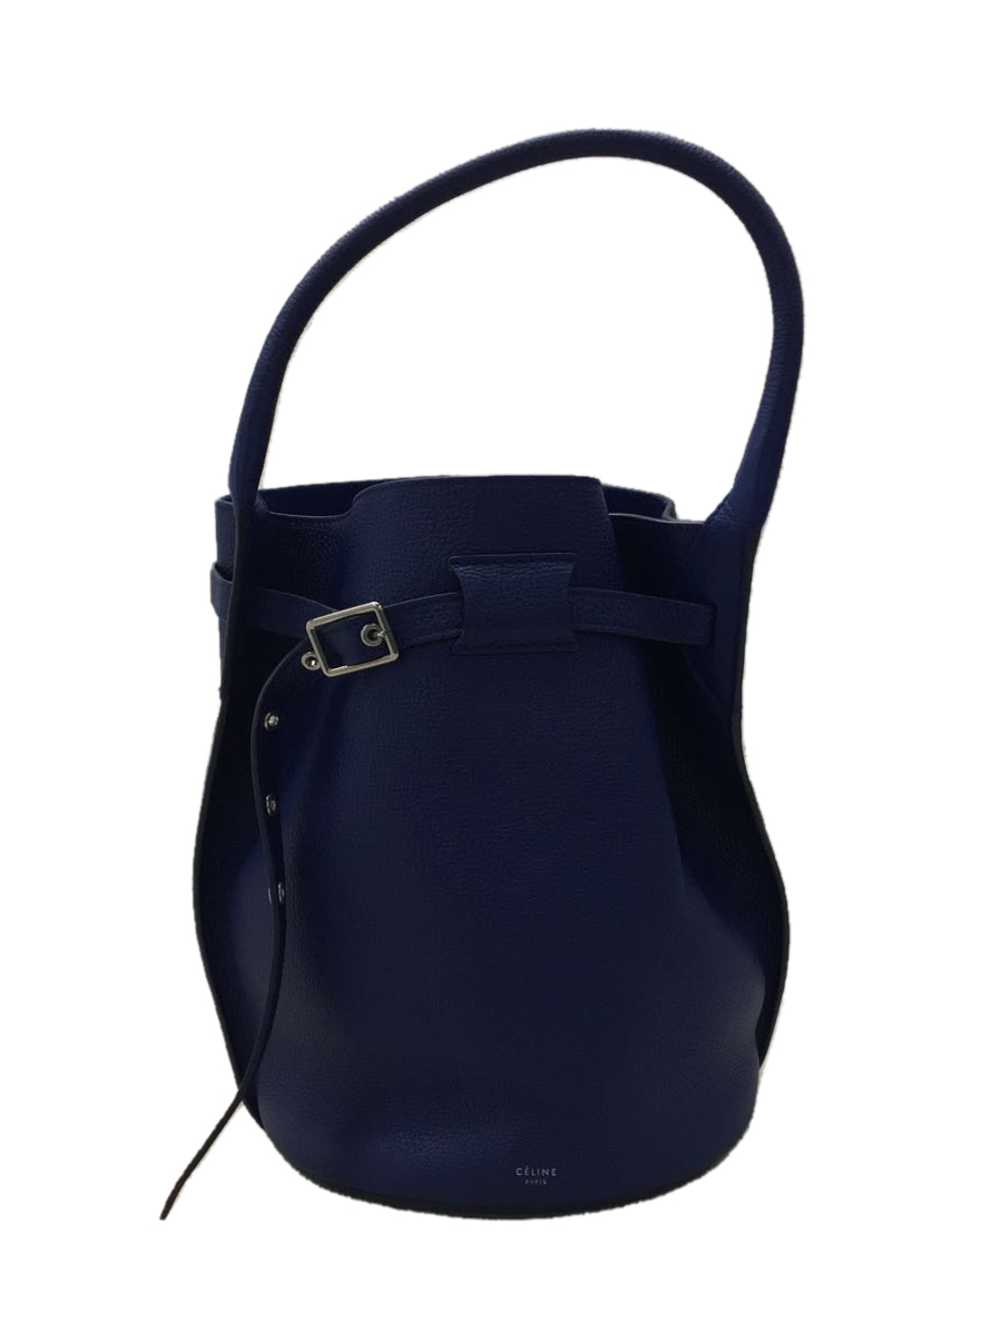 Celine Big Bag Bucket With Long Strap Handbag Lea… - image 1